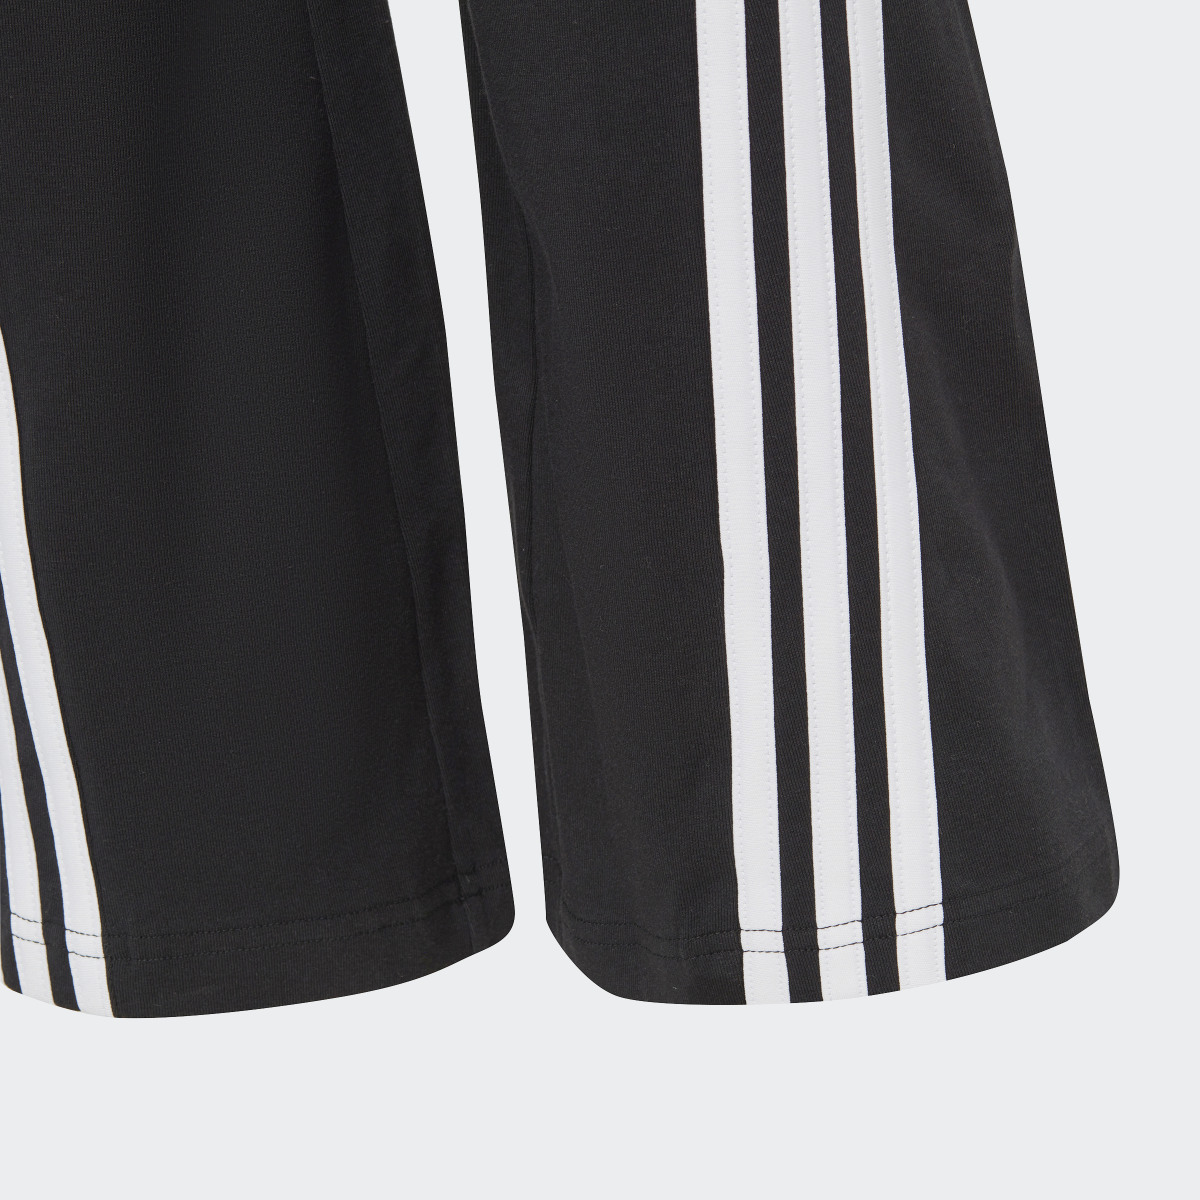 Adidas Tight évasé en coton Future Icons 3-Stripes. 4